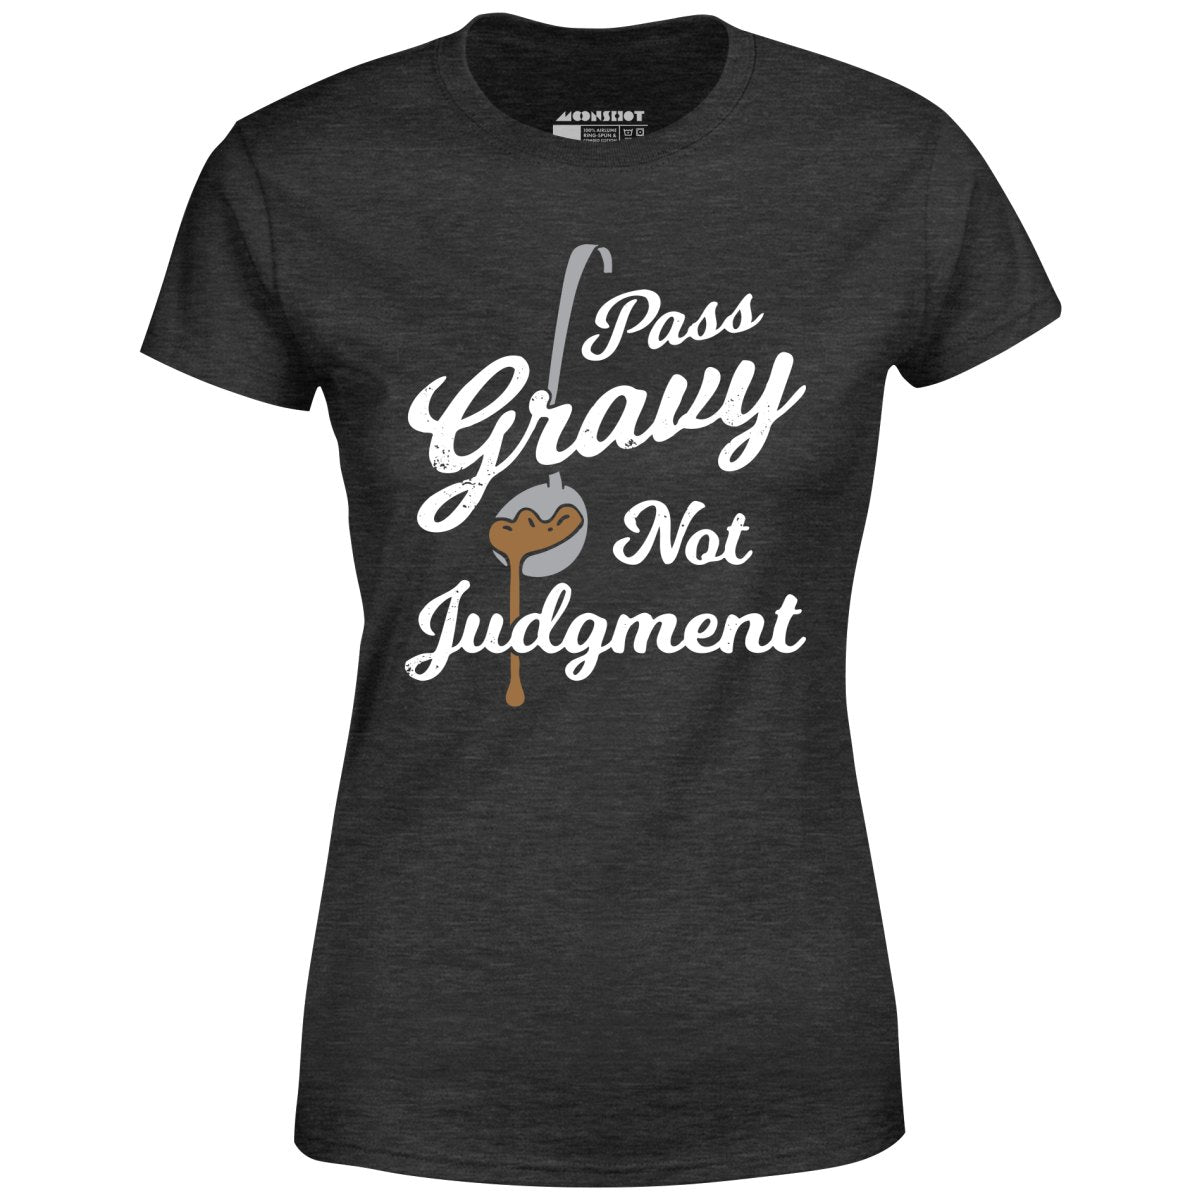 Pass Gravy Not Judgment - Women's T-Shirt